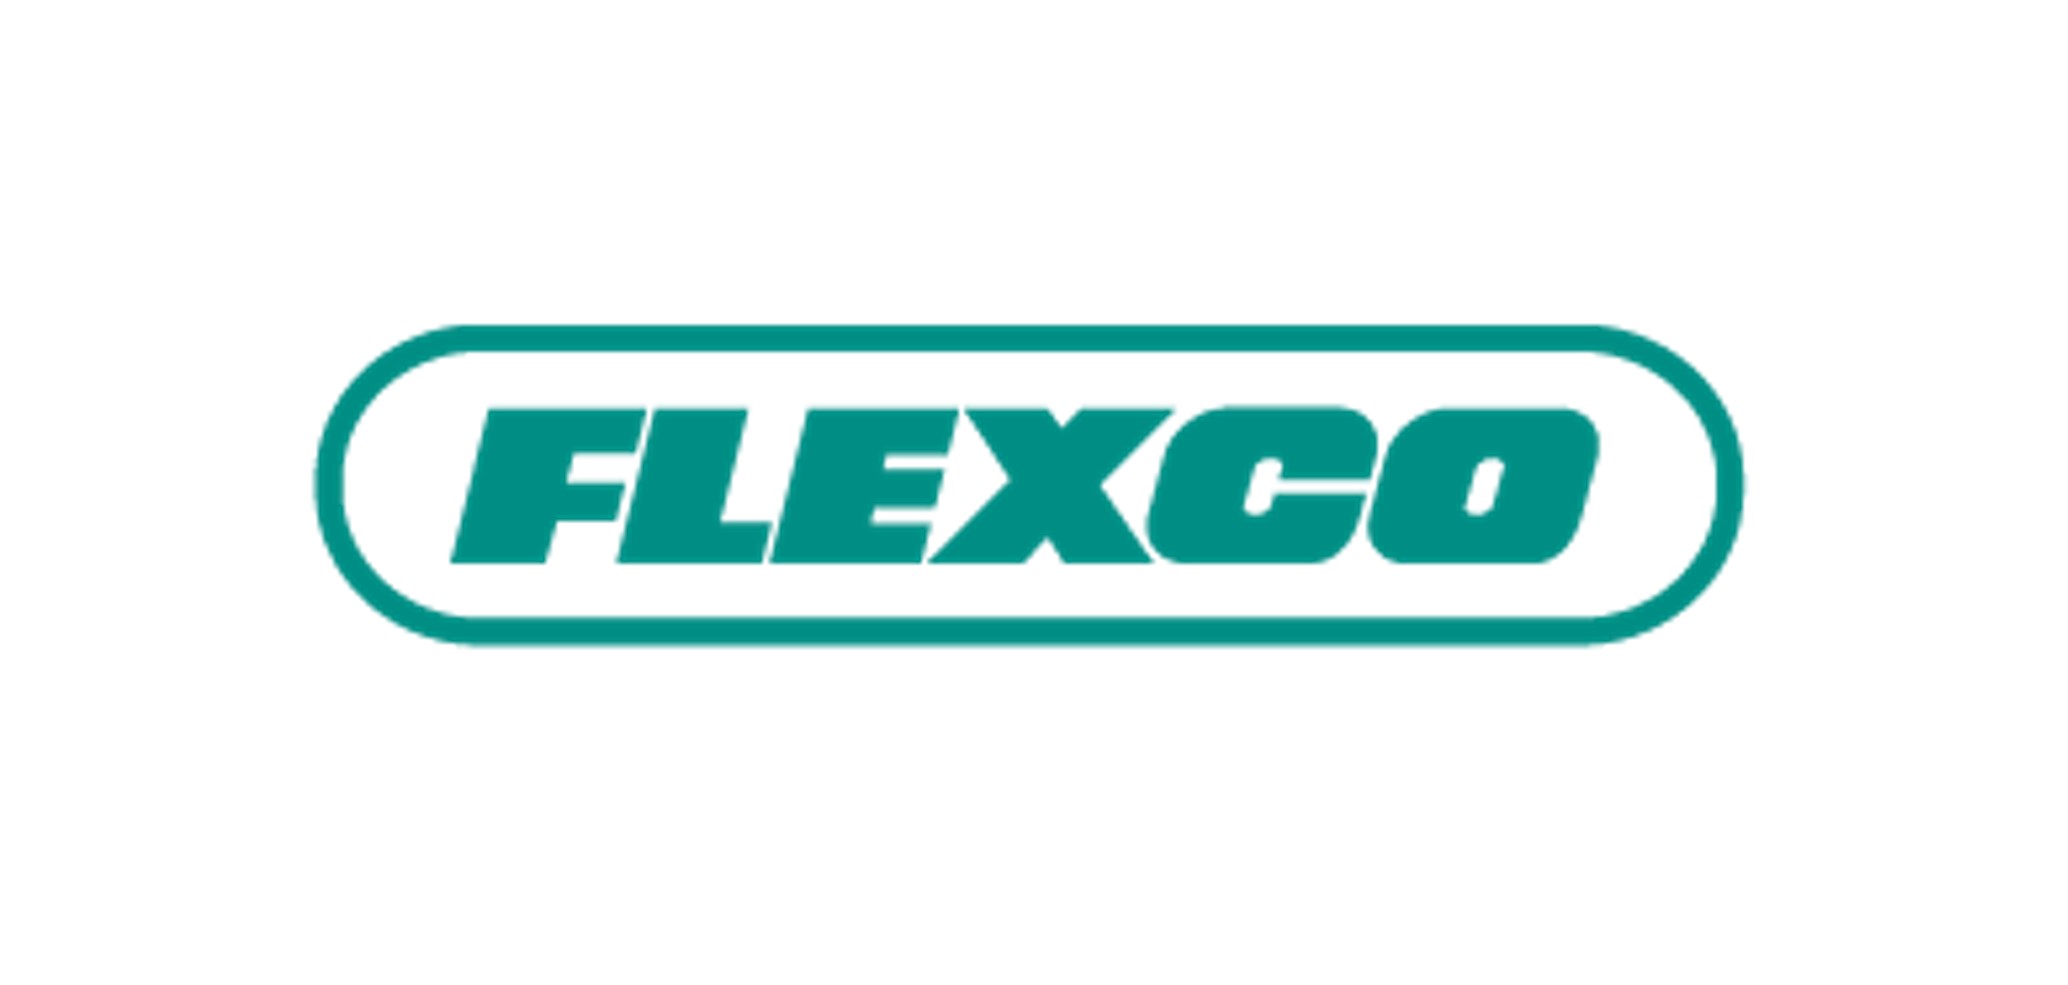 Flexco